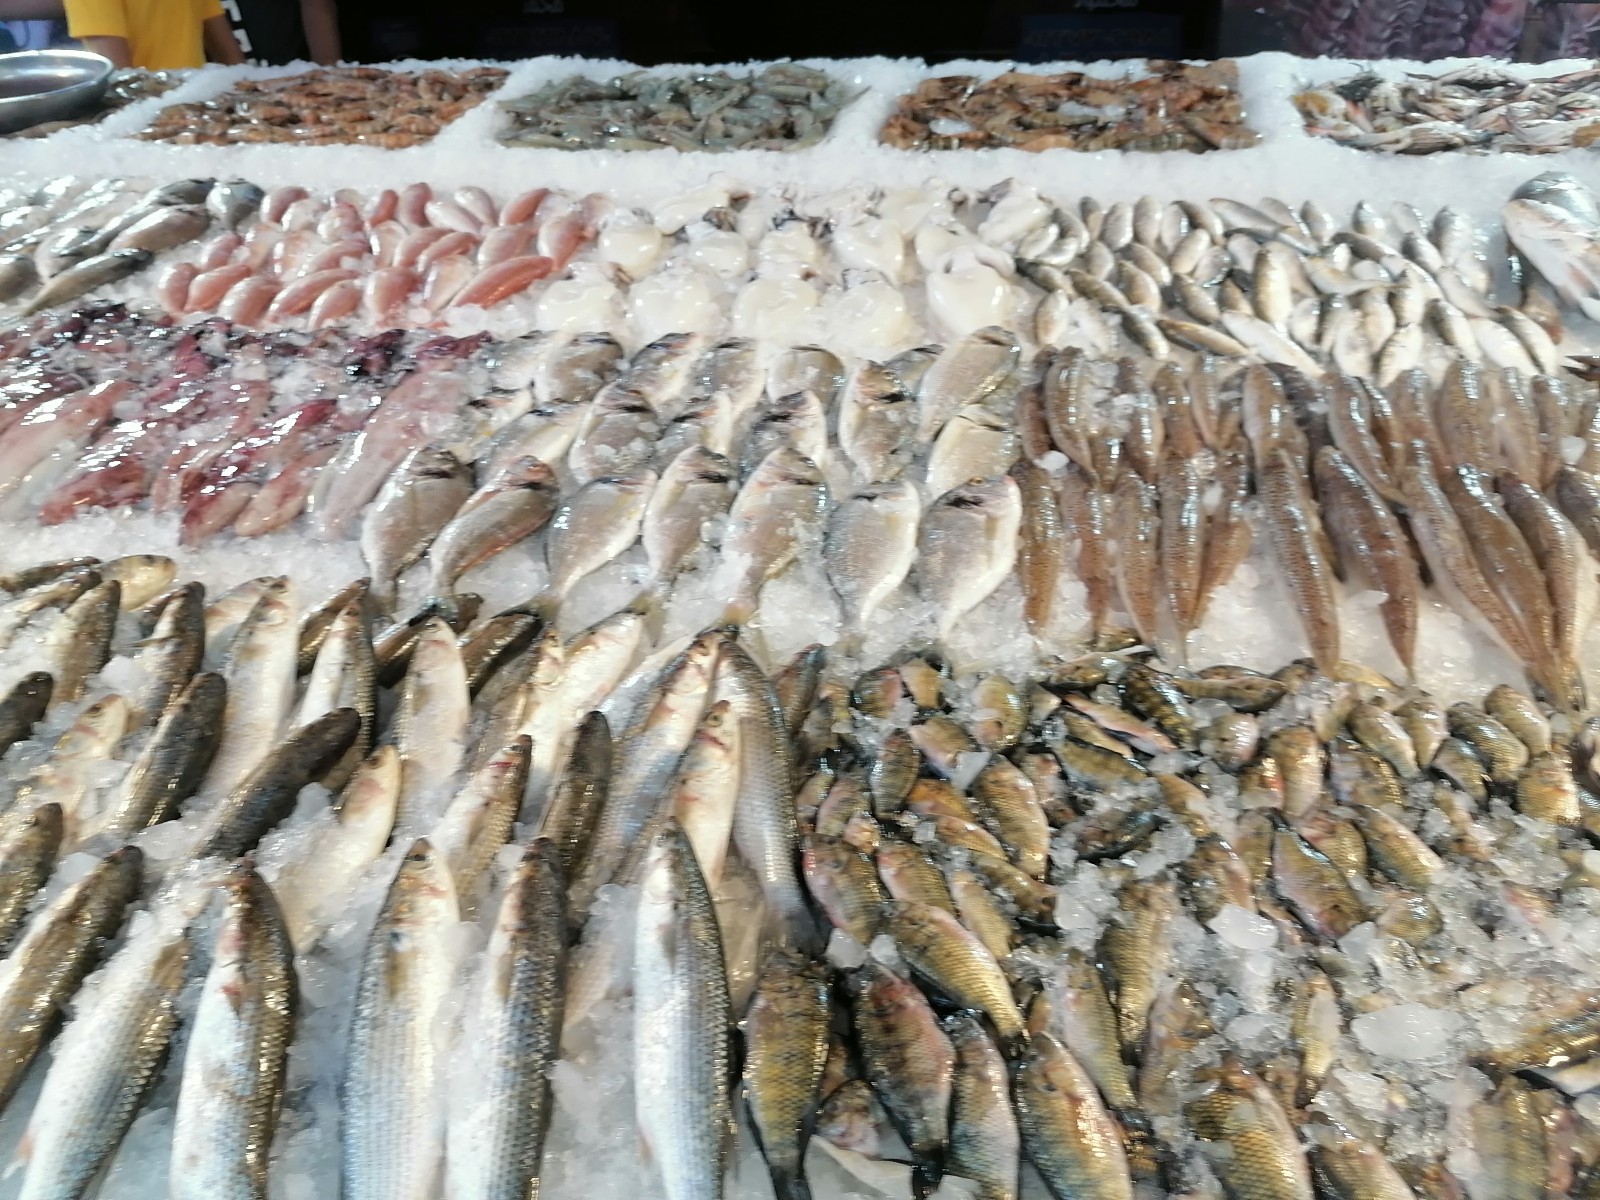 الأسماك بالسوق في بورسعيد